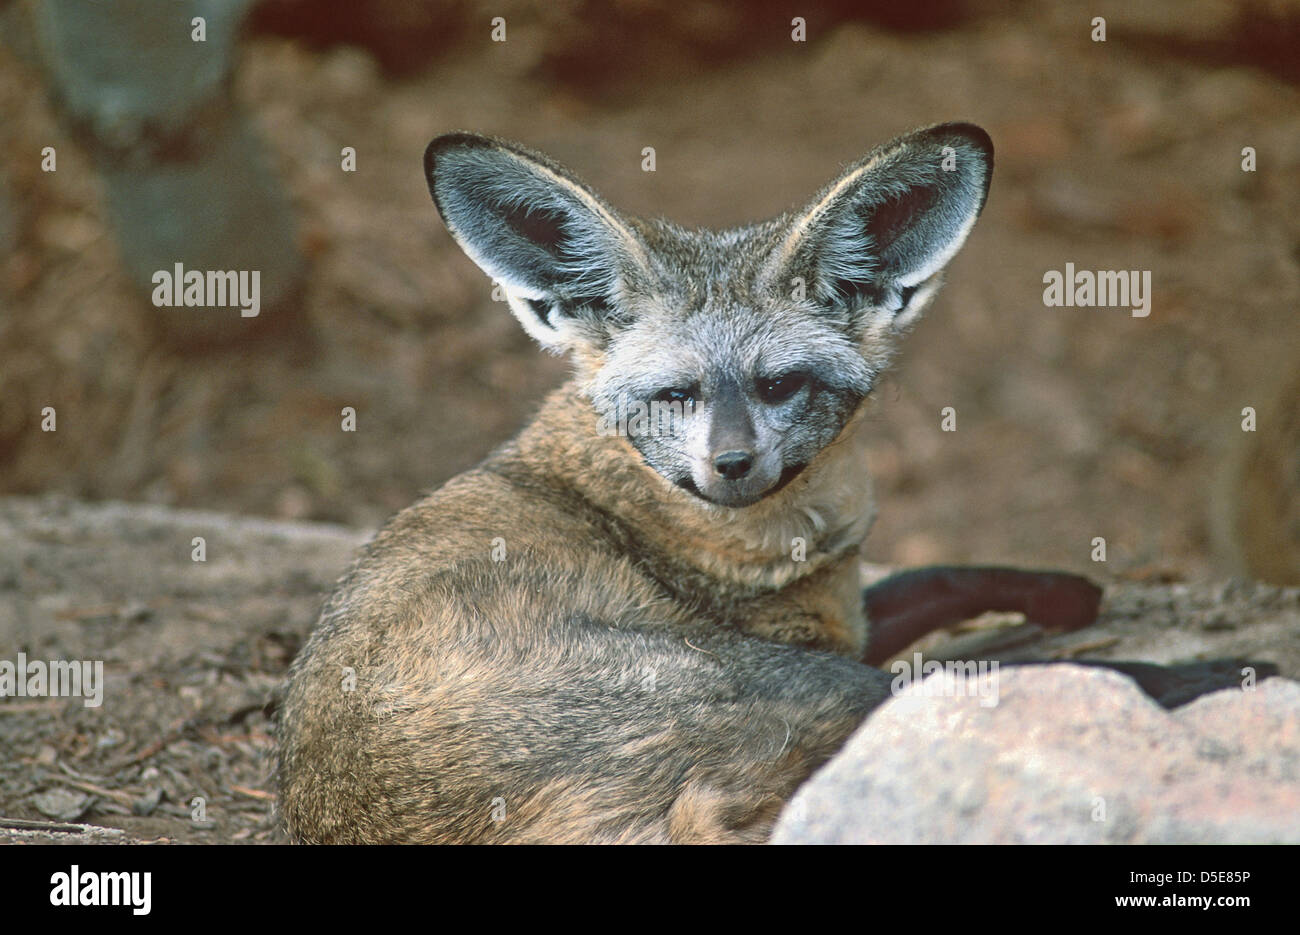 Der Hieb-eared Fuchs (Otocyon Megalotis) ist ein Canid der afrikanischen Savanne, benannt nach seinen großen Ohren Stockfoto